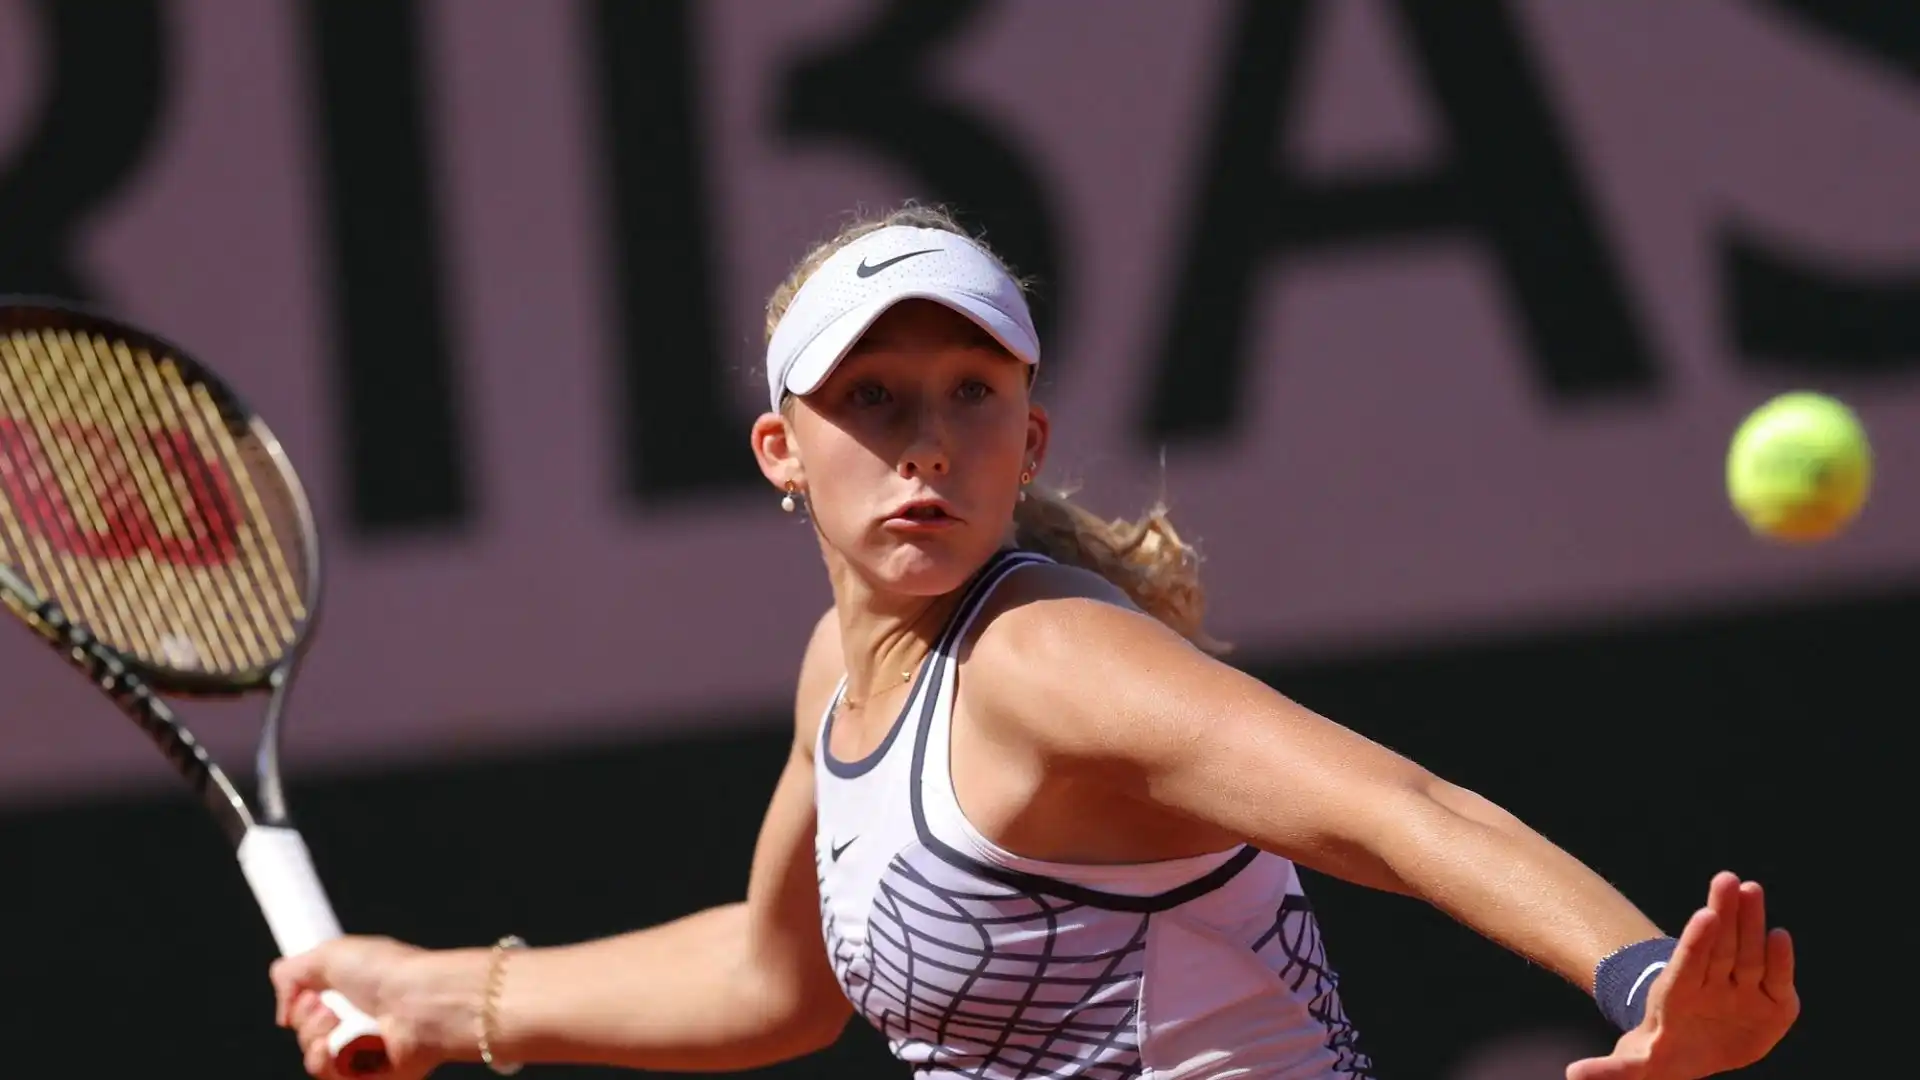 La tennista russa, 16 anni, è riuscita ad approdare nel tabellone principale dopo le qualificazioni, senza perdere un set